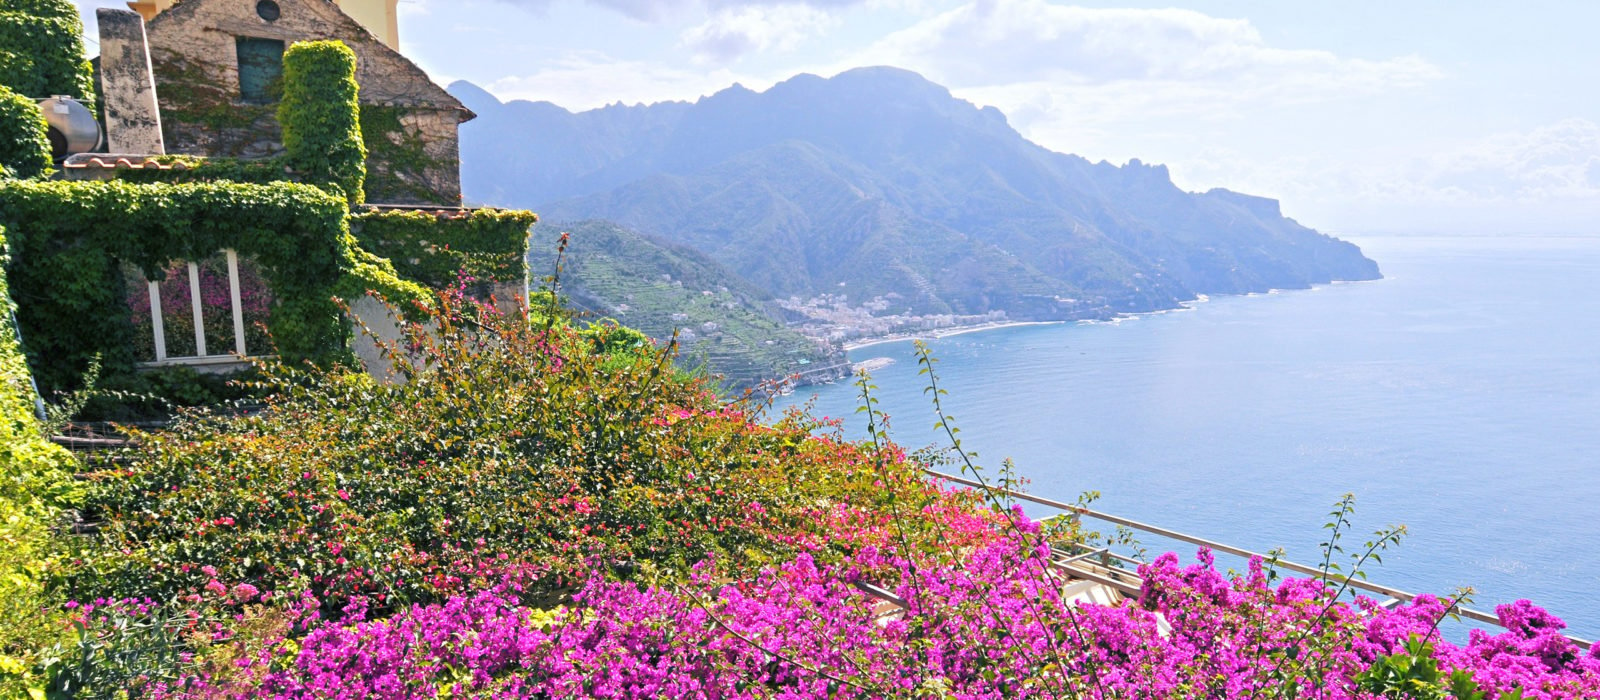 Views over the sea on the Amalfi Coast, Italy.